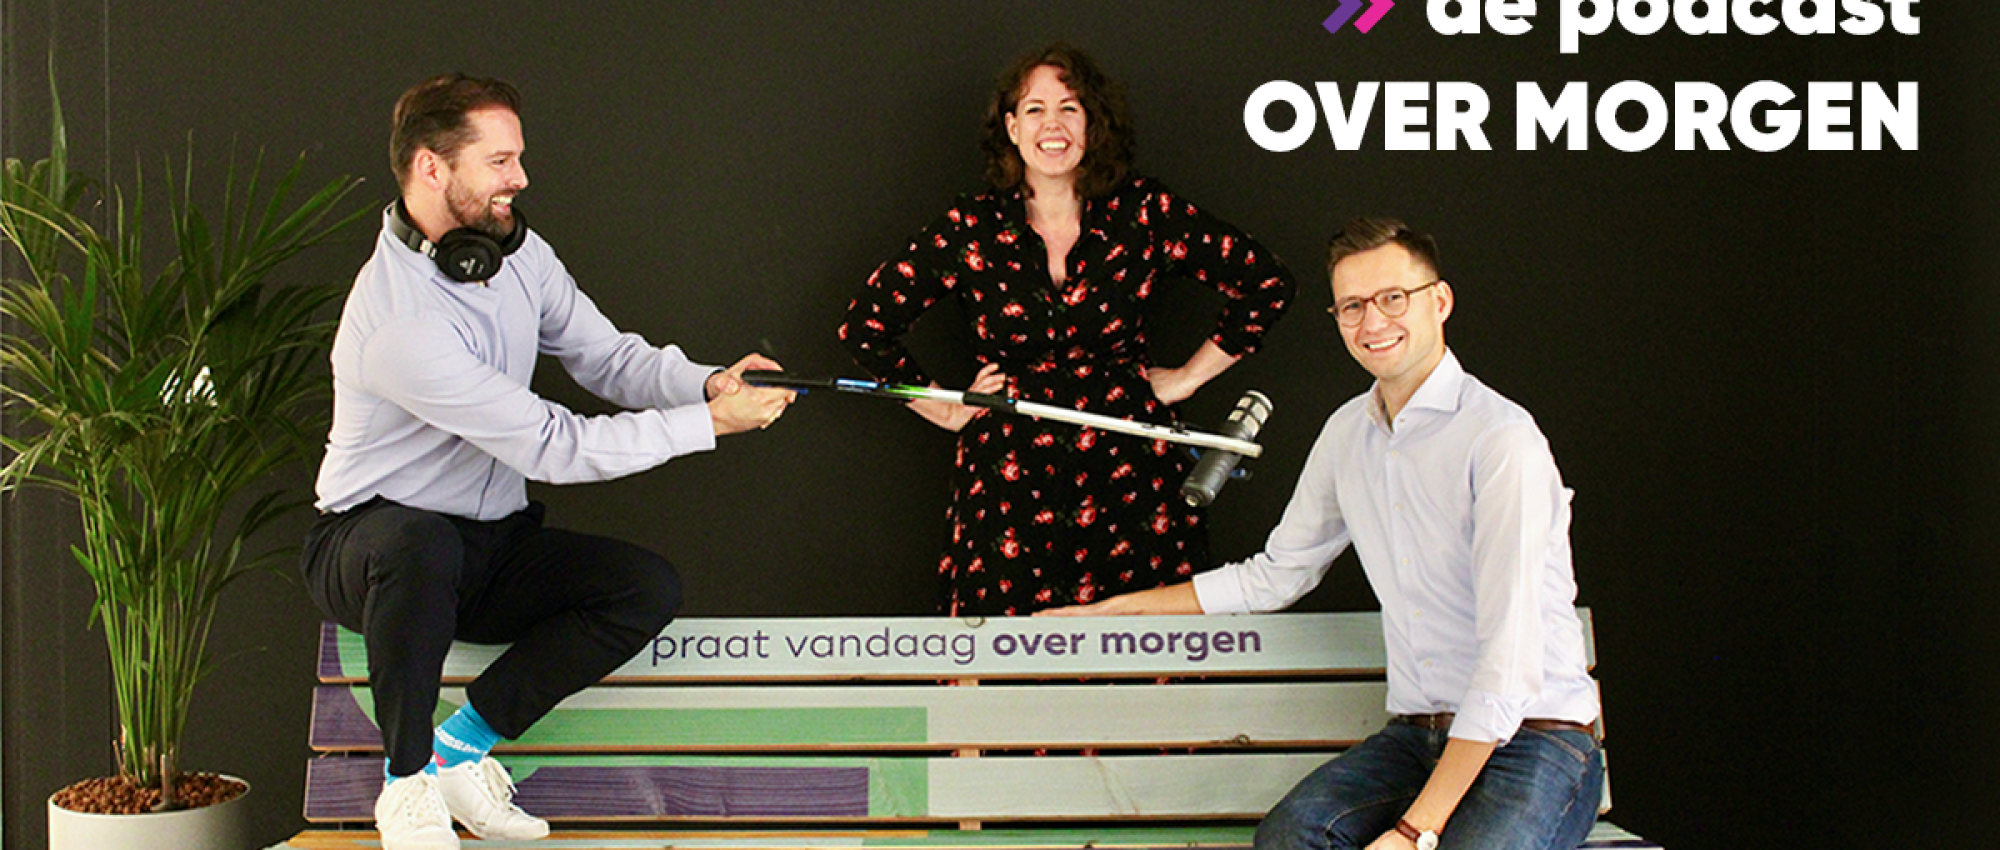 Fundis innovatiemanagers Patricia de Koning en Jan Willem Alst